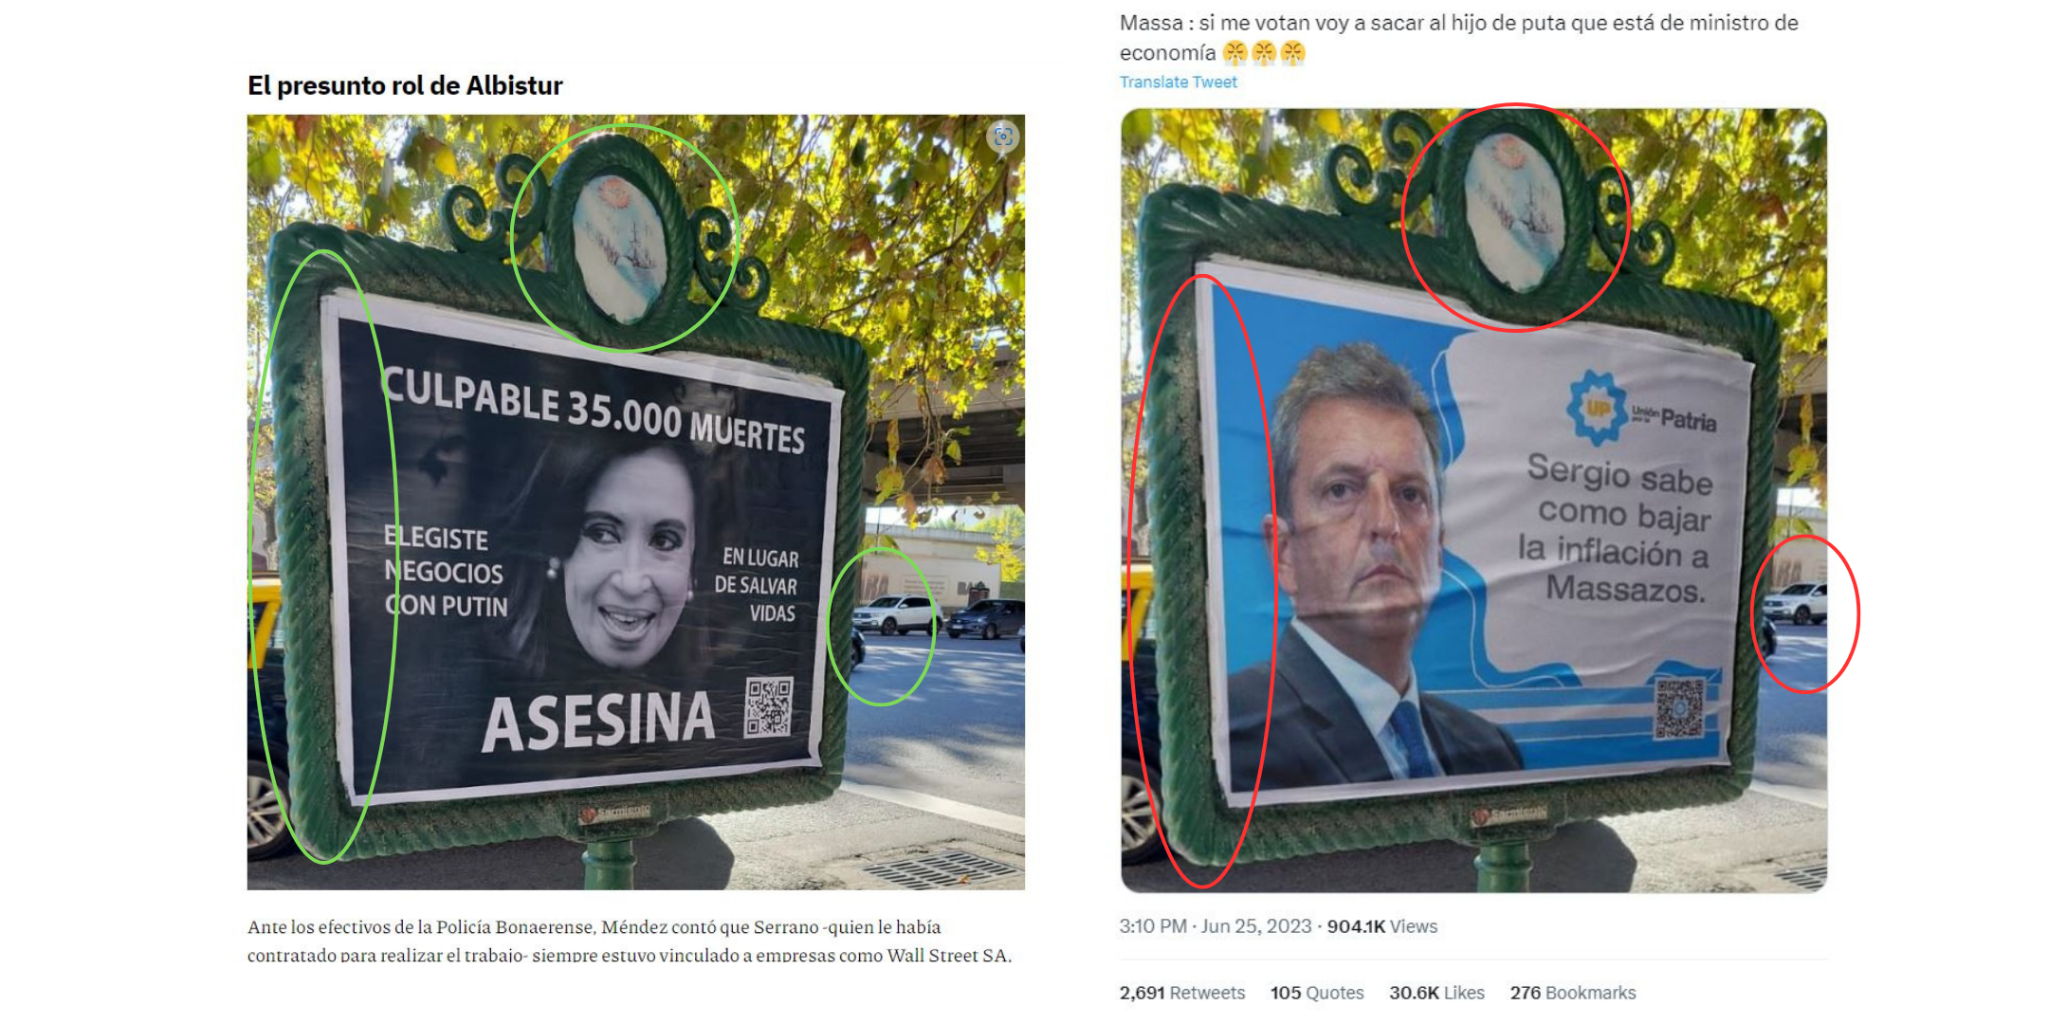 La campaña de Sergio Massa no divulgó un afiche en el que promete “bajar la inflación a Massazos”